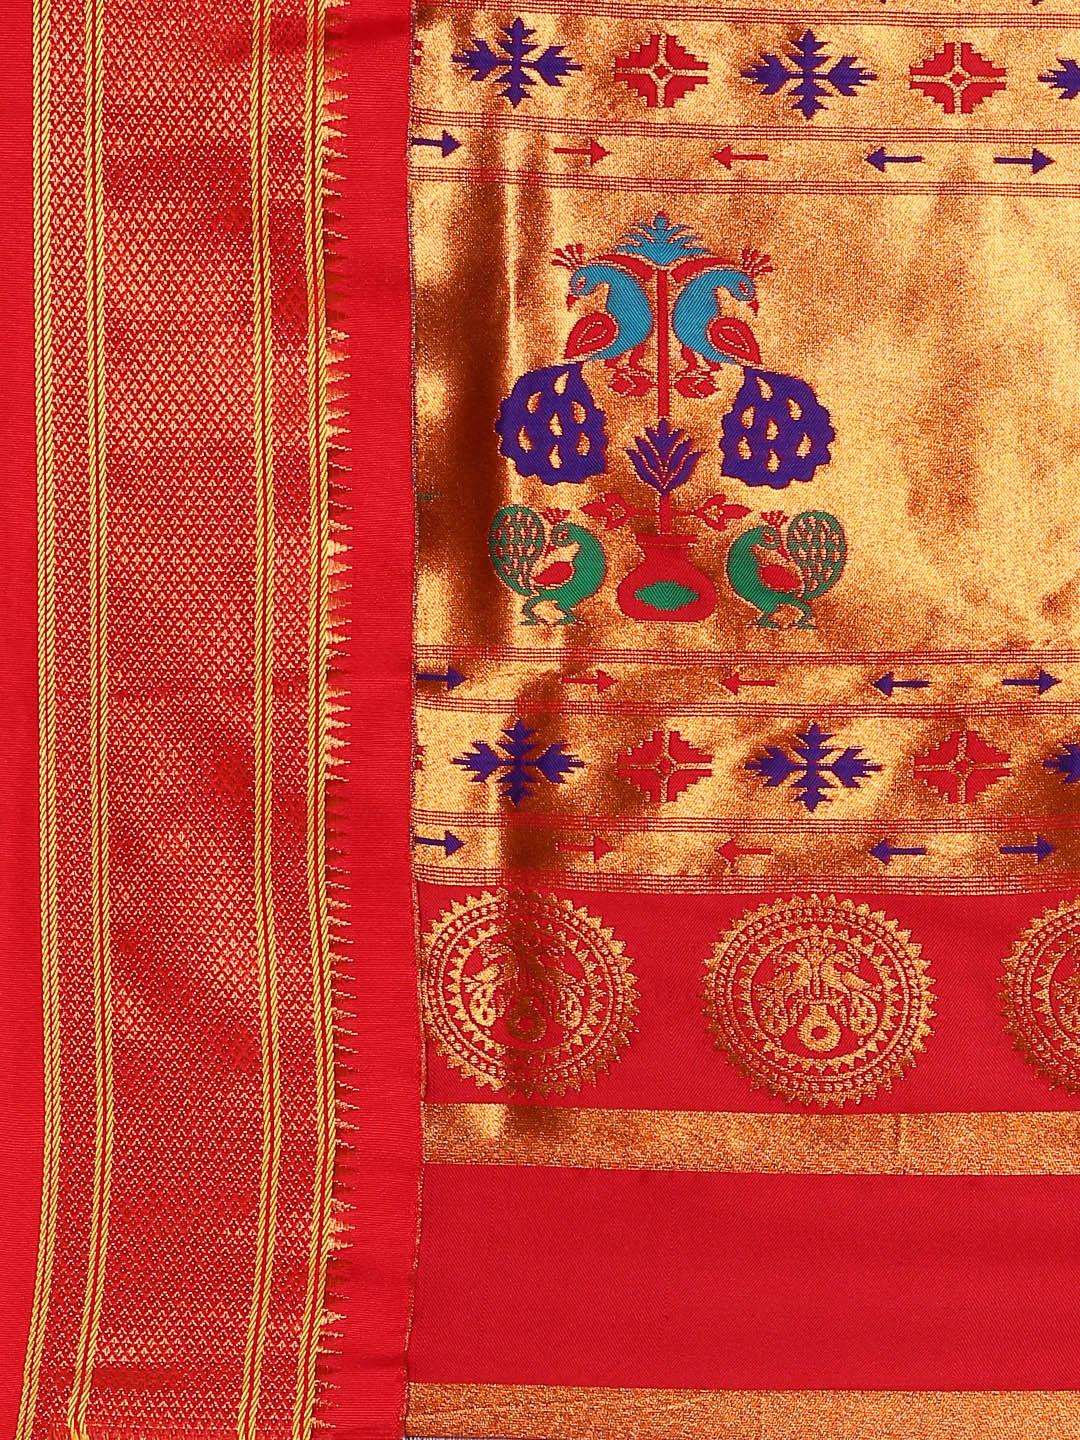            Neha Indigo Blue & Red Soft Silk Maharani Paithani Saree     Varkala Silk Sarees